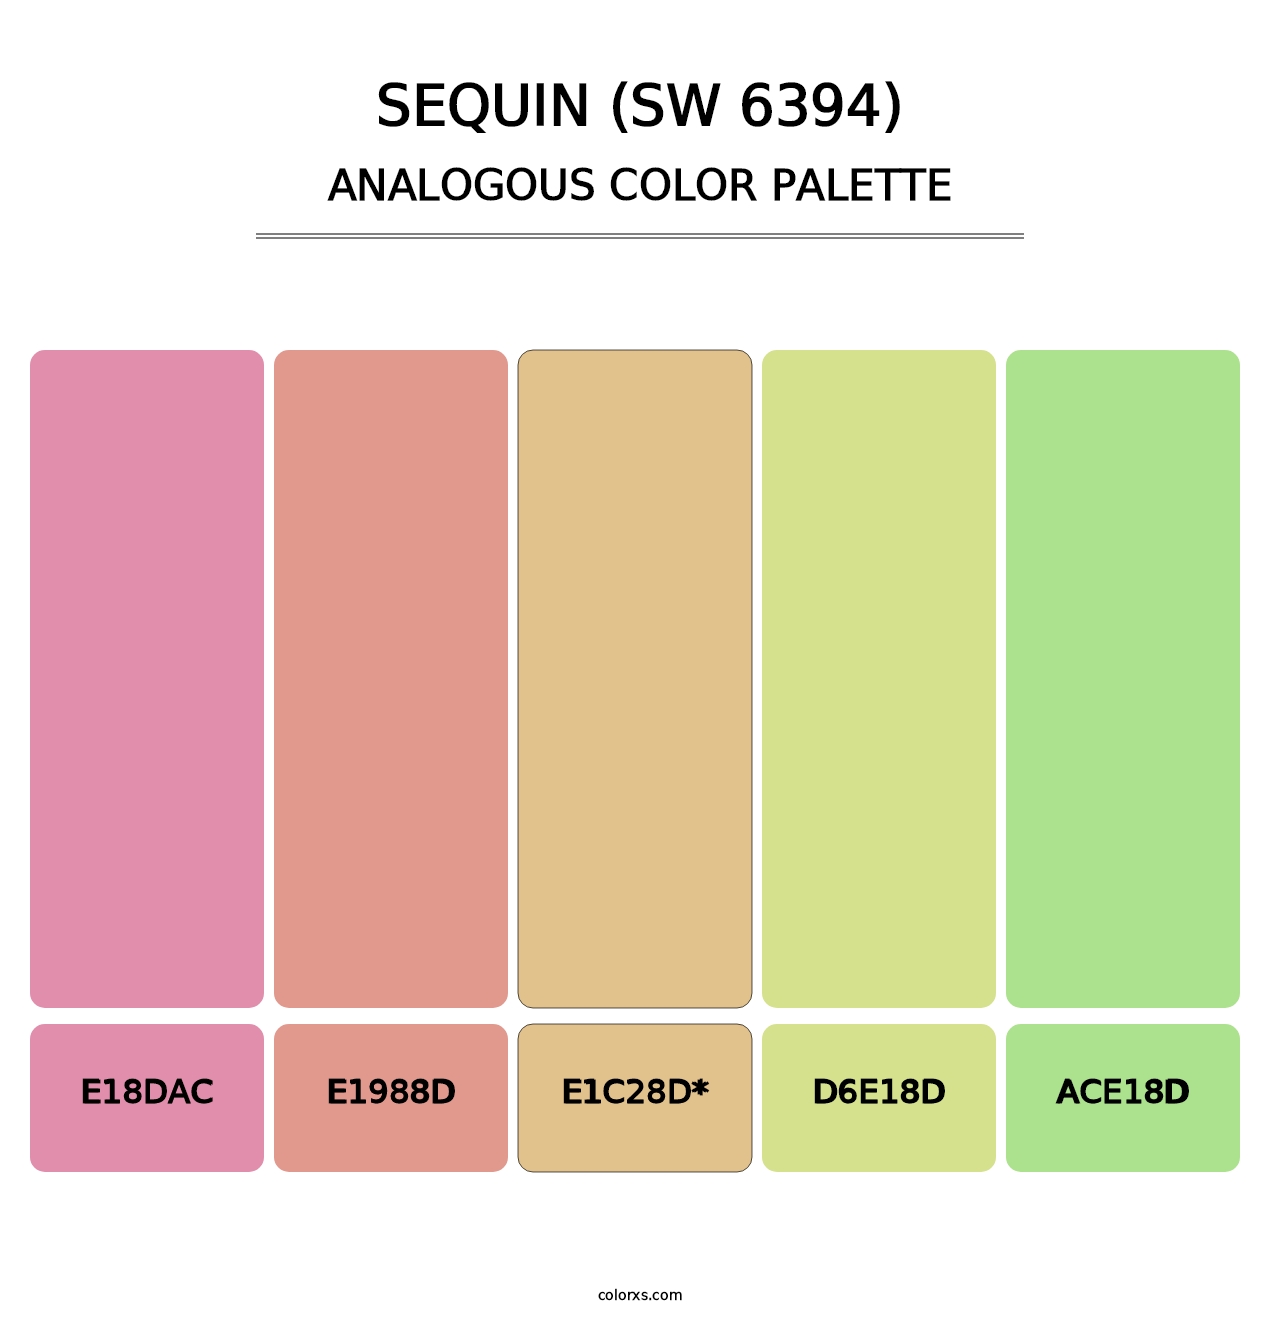 Sequin (SW 6394) - Analogous Color Palette